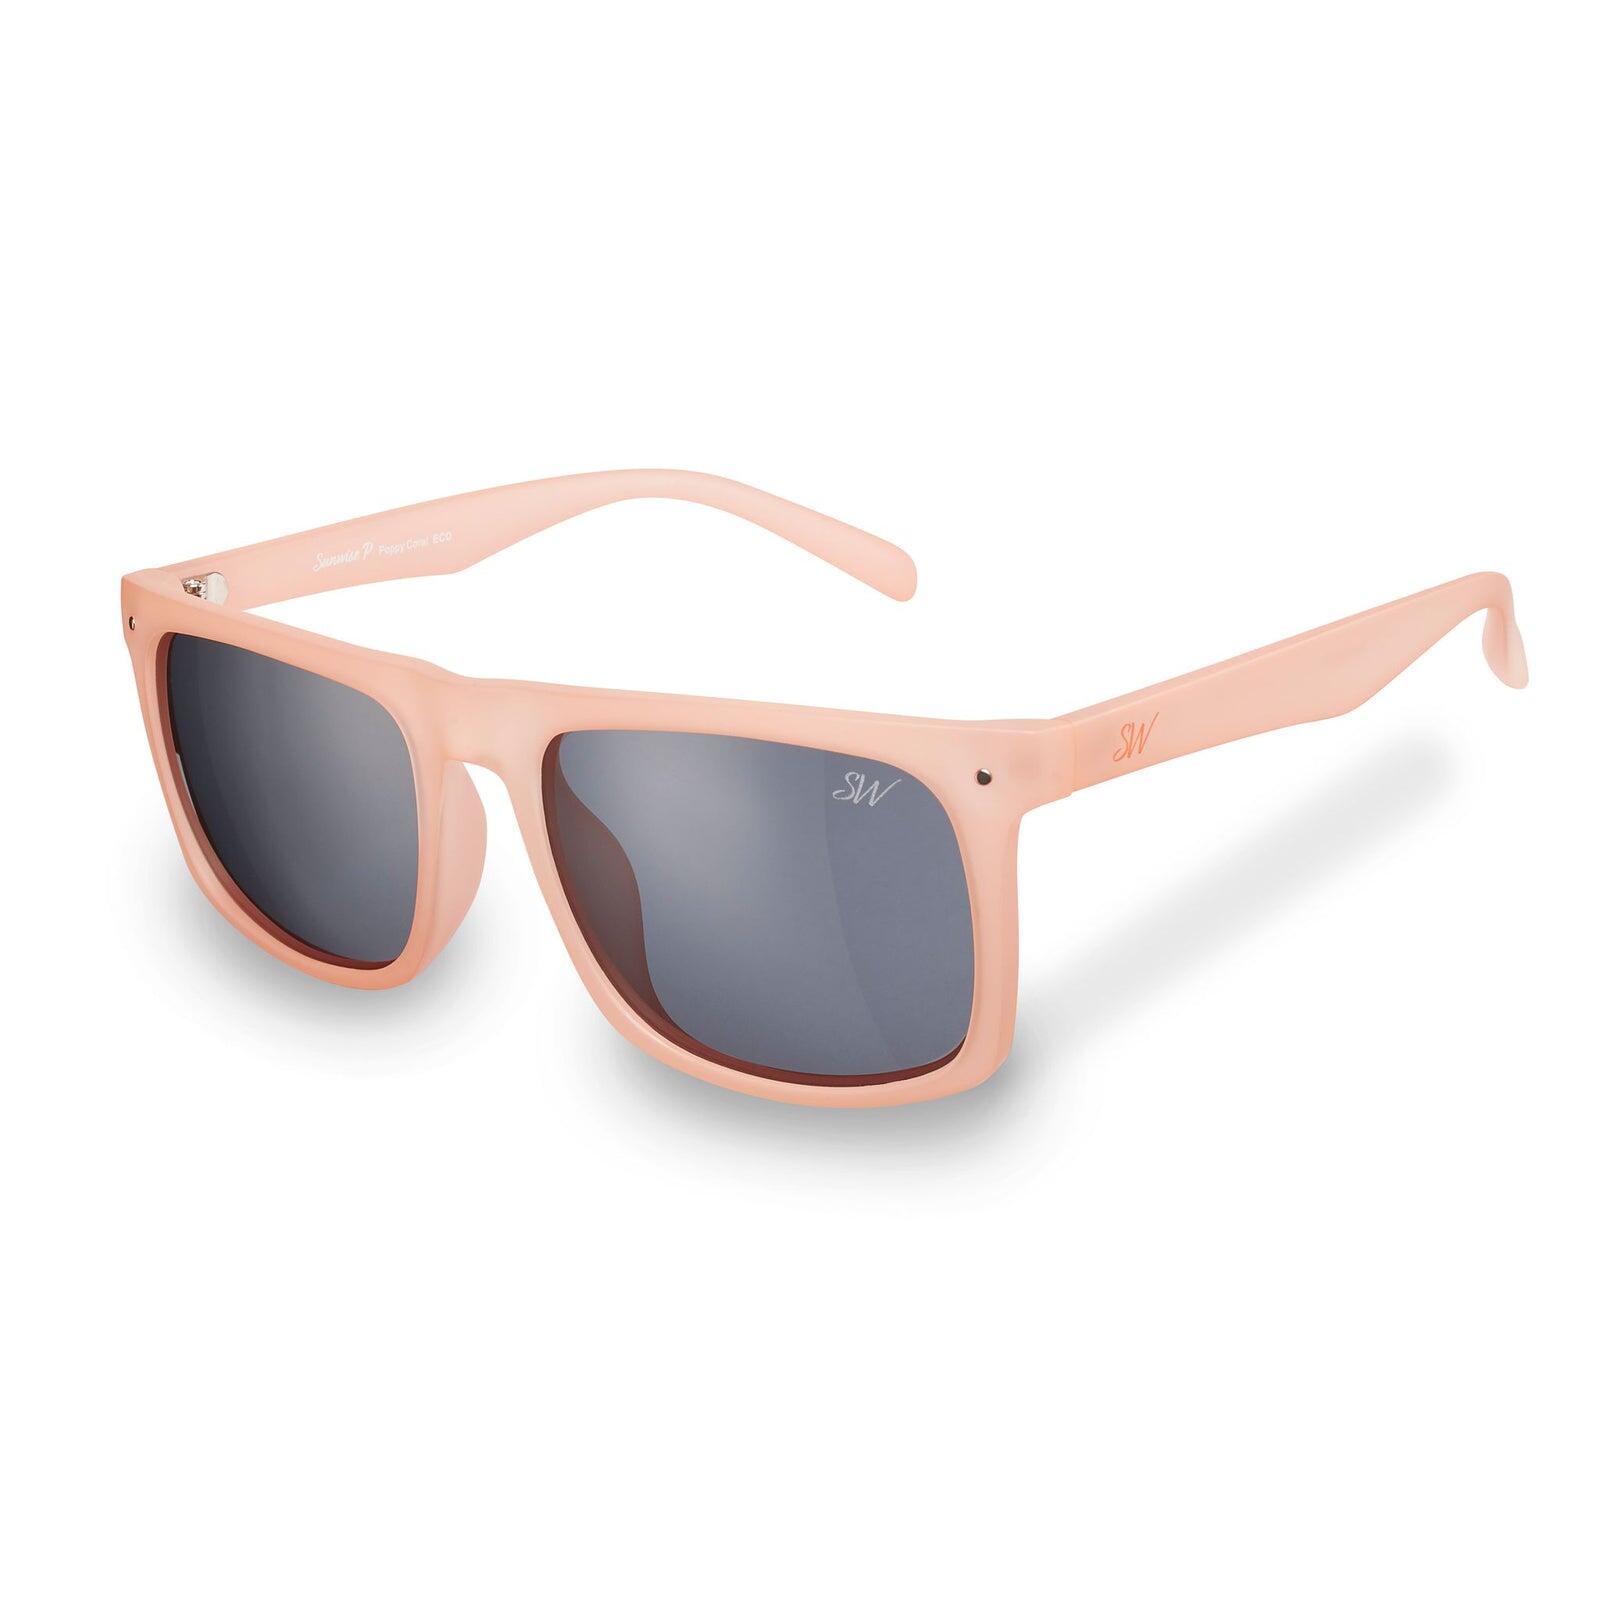 SUNWISE Poppy Lifestyle Sports Sunglasses  - Category 3